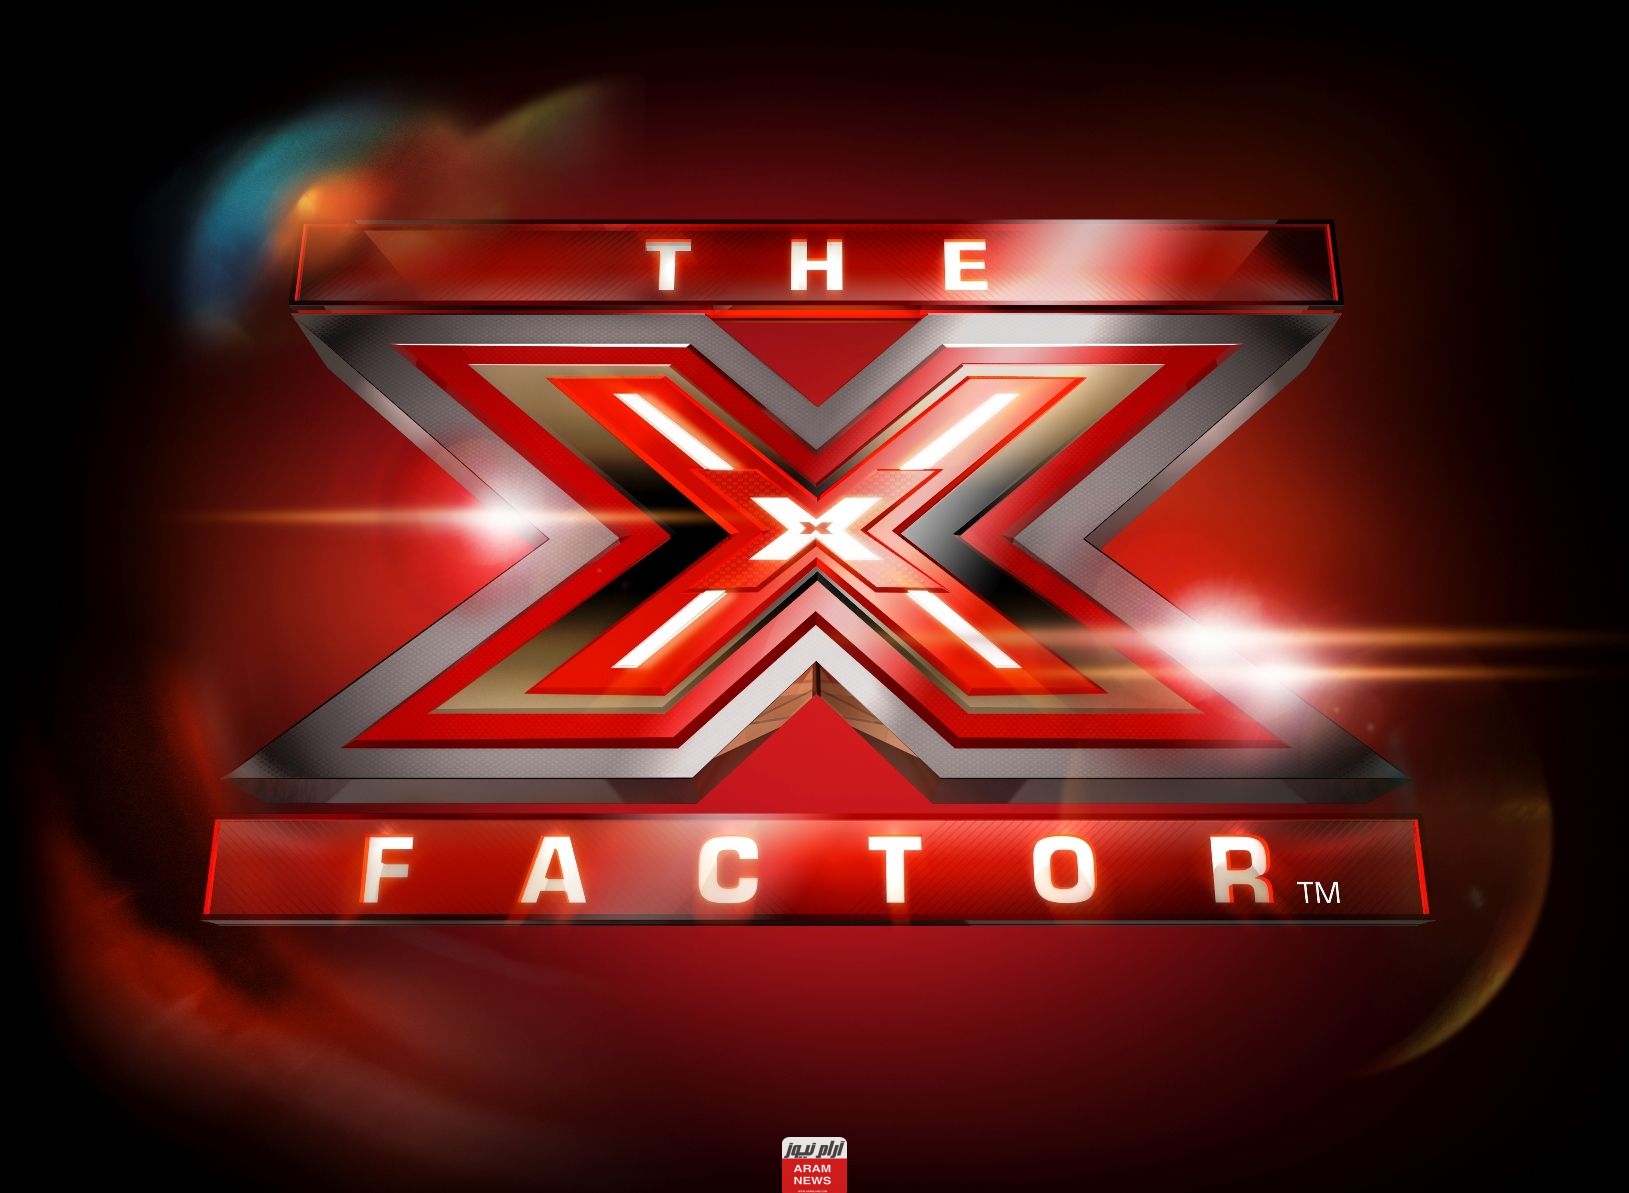 مشاهدة برنامج اكس فاكتور الحلقة 2 X Factor كاملة دقة عالية hd